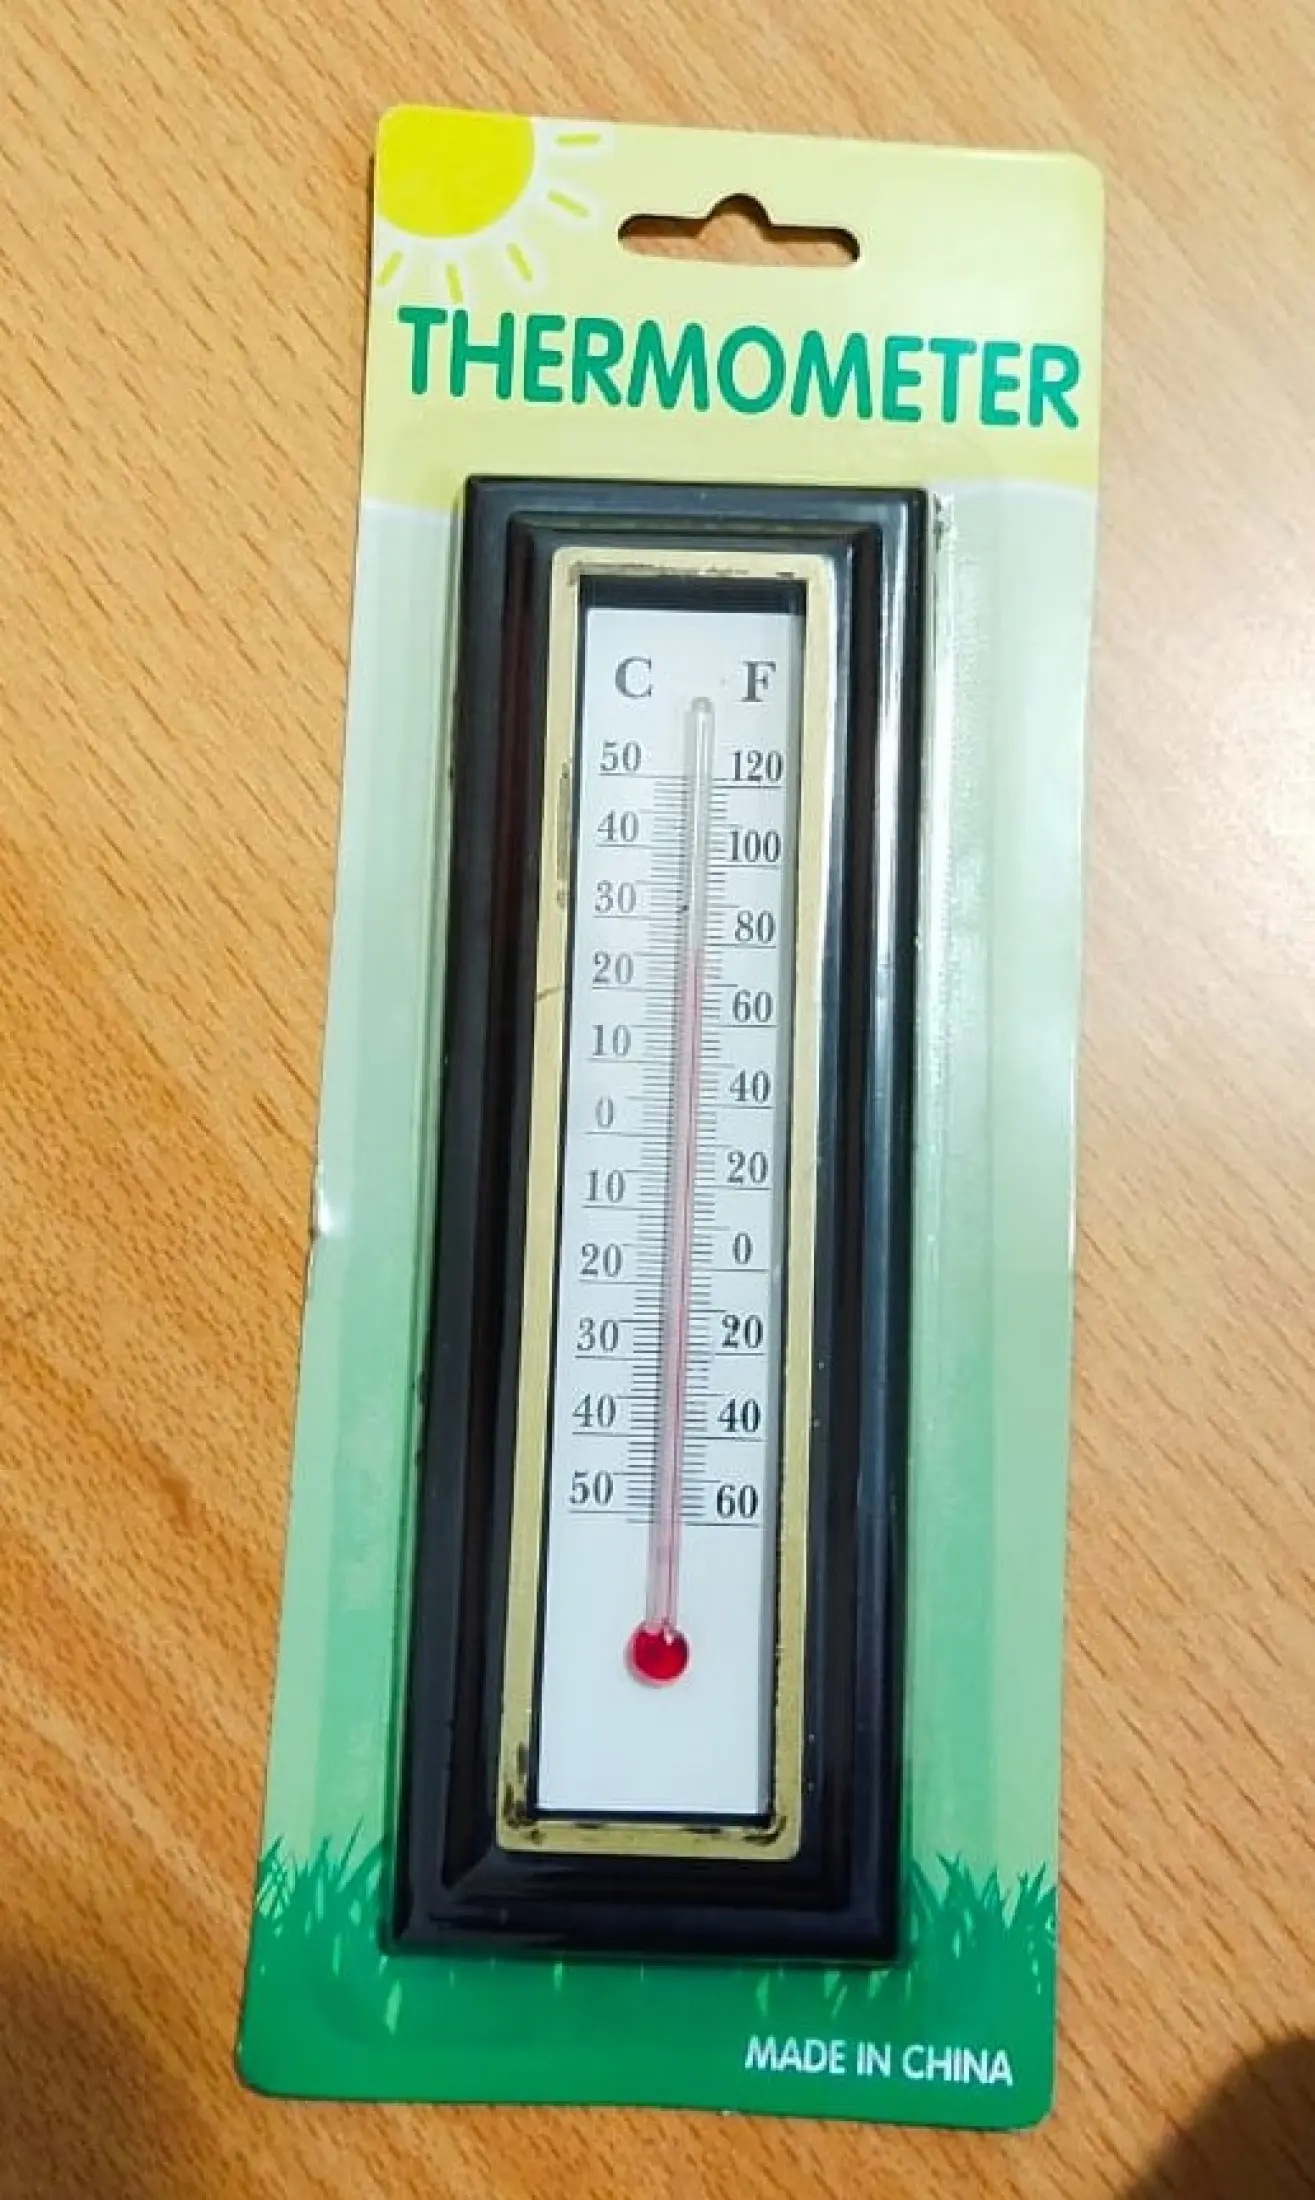 Thermometer Dinding Kayu Alat Pengukur Suhu Ruangan 50c Sd 50c Lazada Indonesia